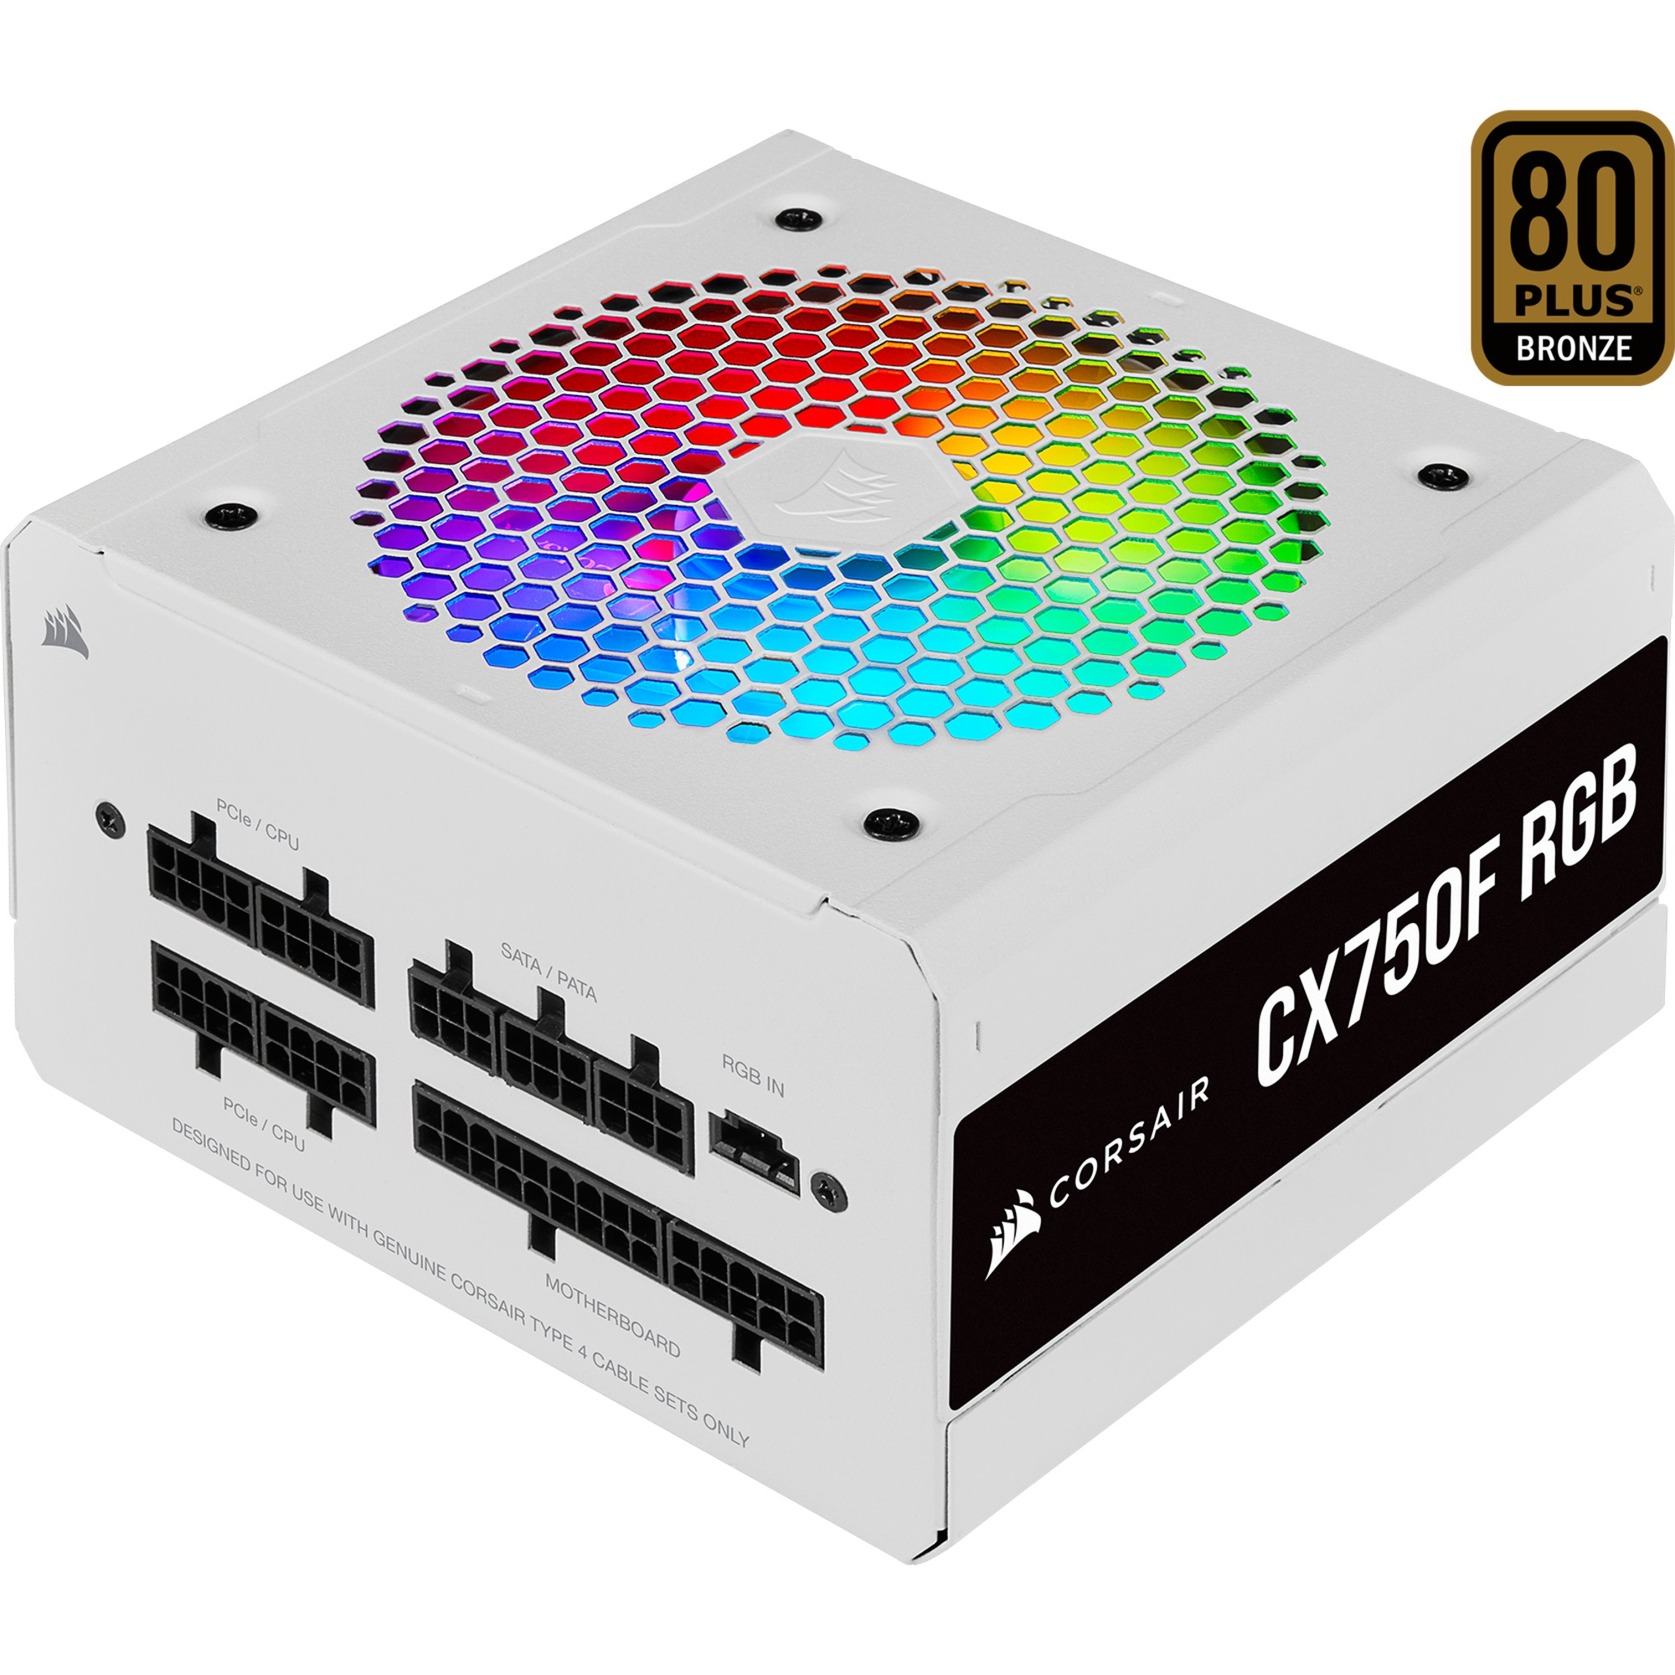 Image of Alternate - CX750F RGB, PC-Netzteil online einkaufen bei Alternate